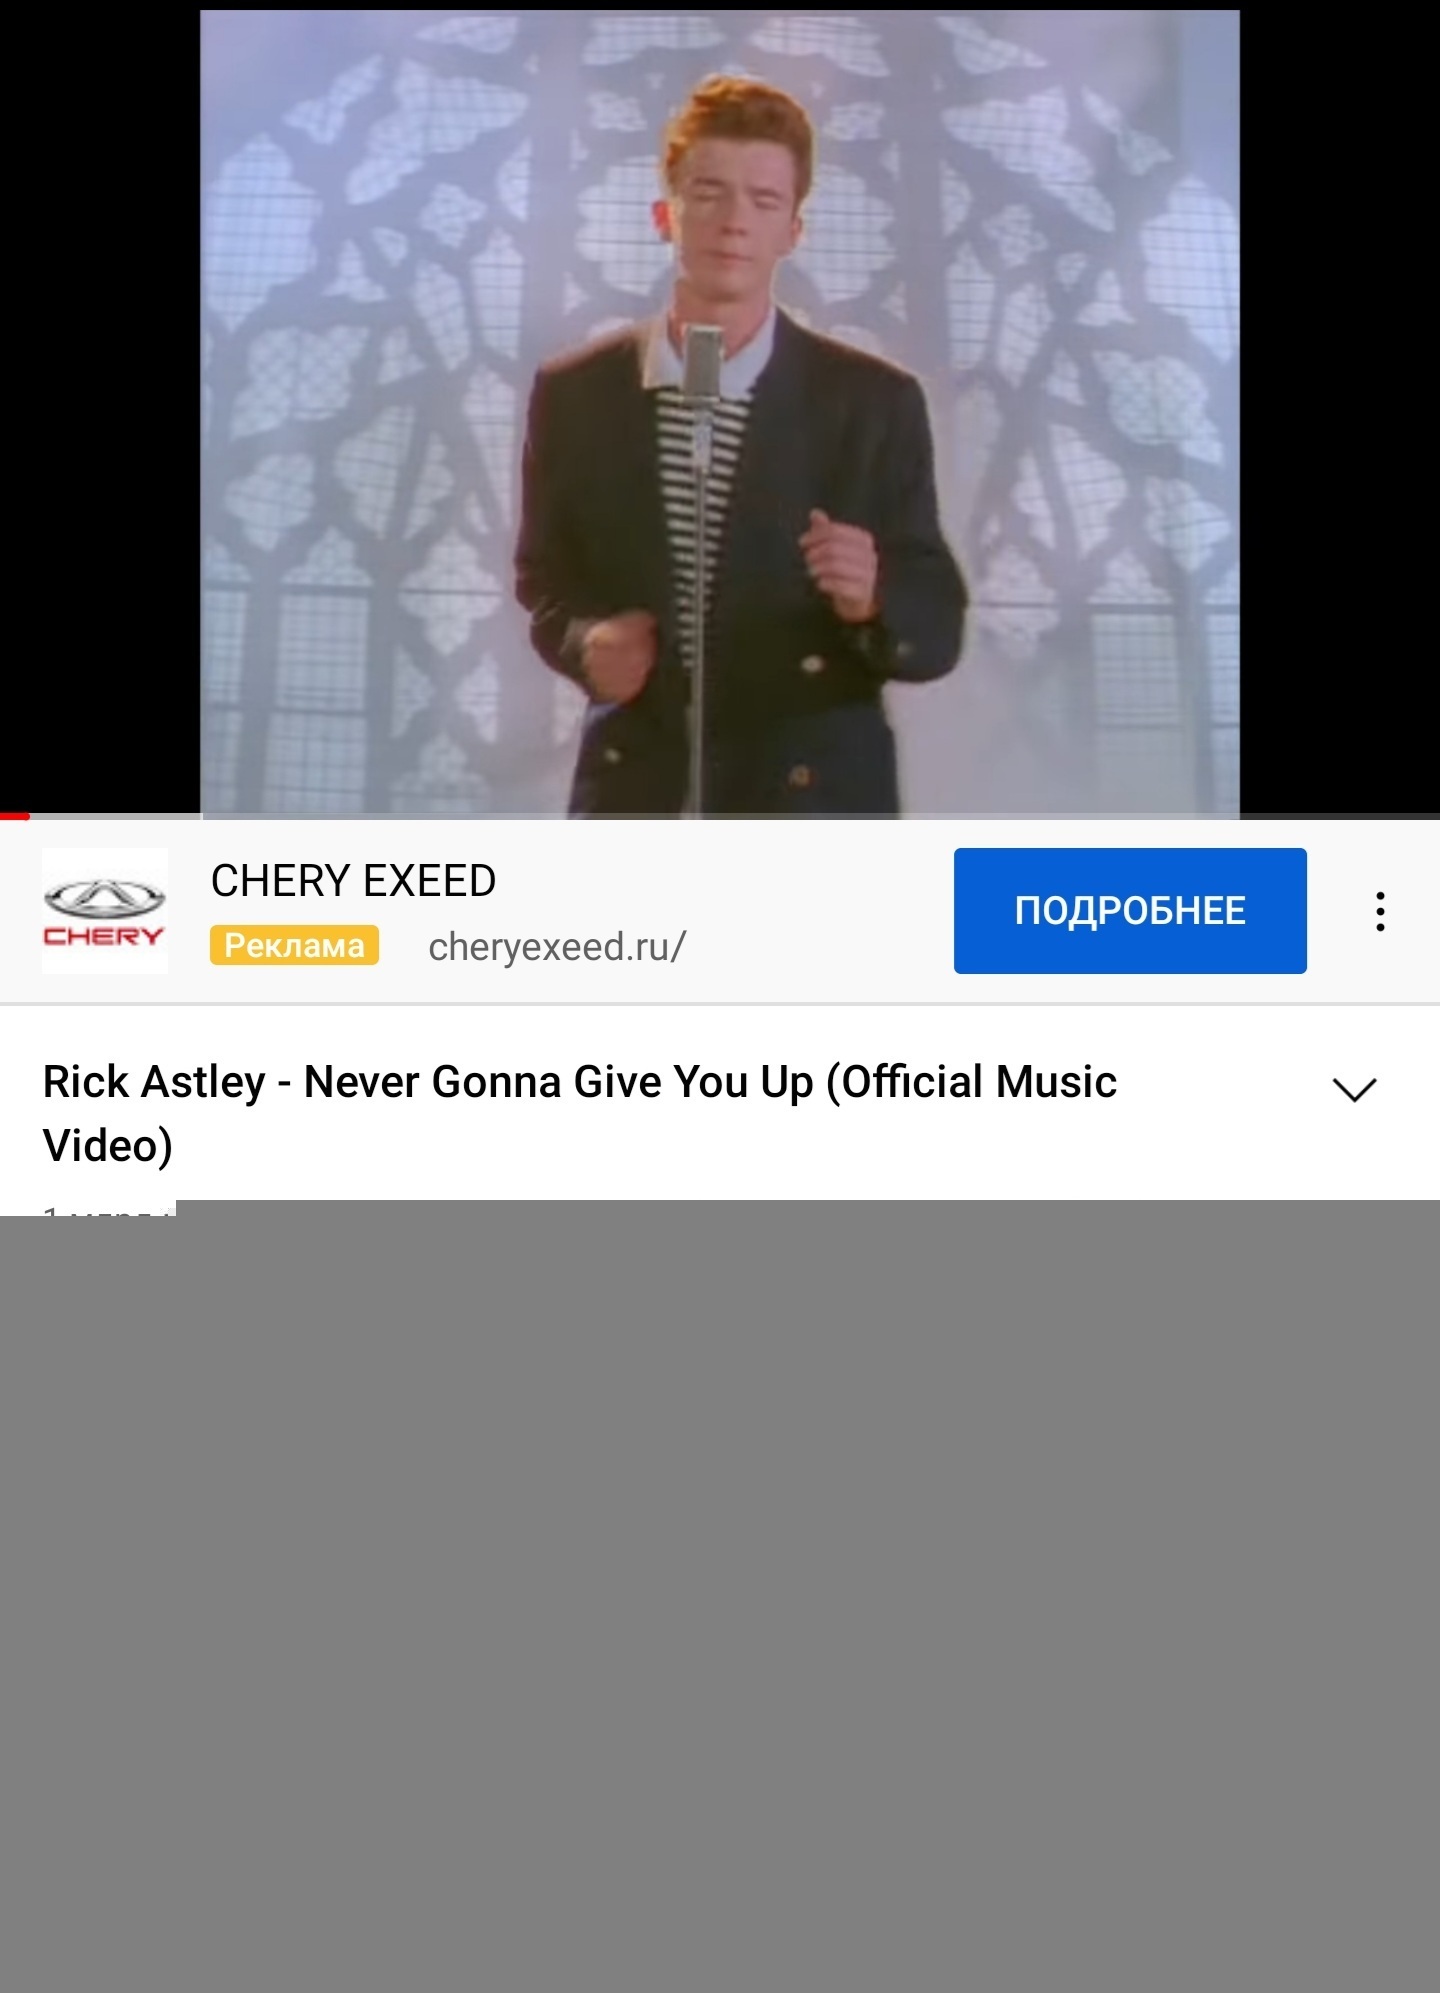 К 1 000 000 000 просмотров подобрался на Youtube клип Рика Эстли. 